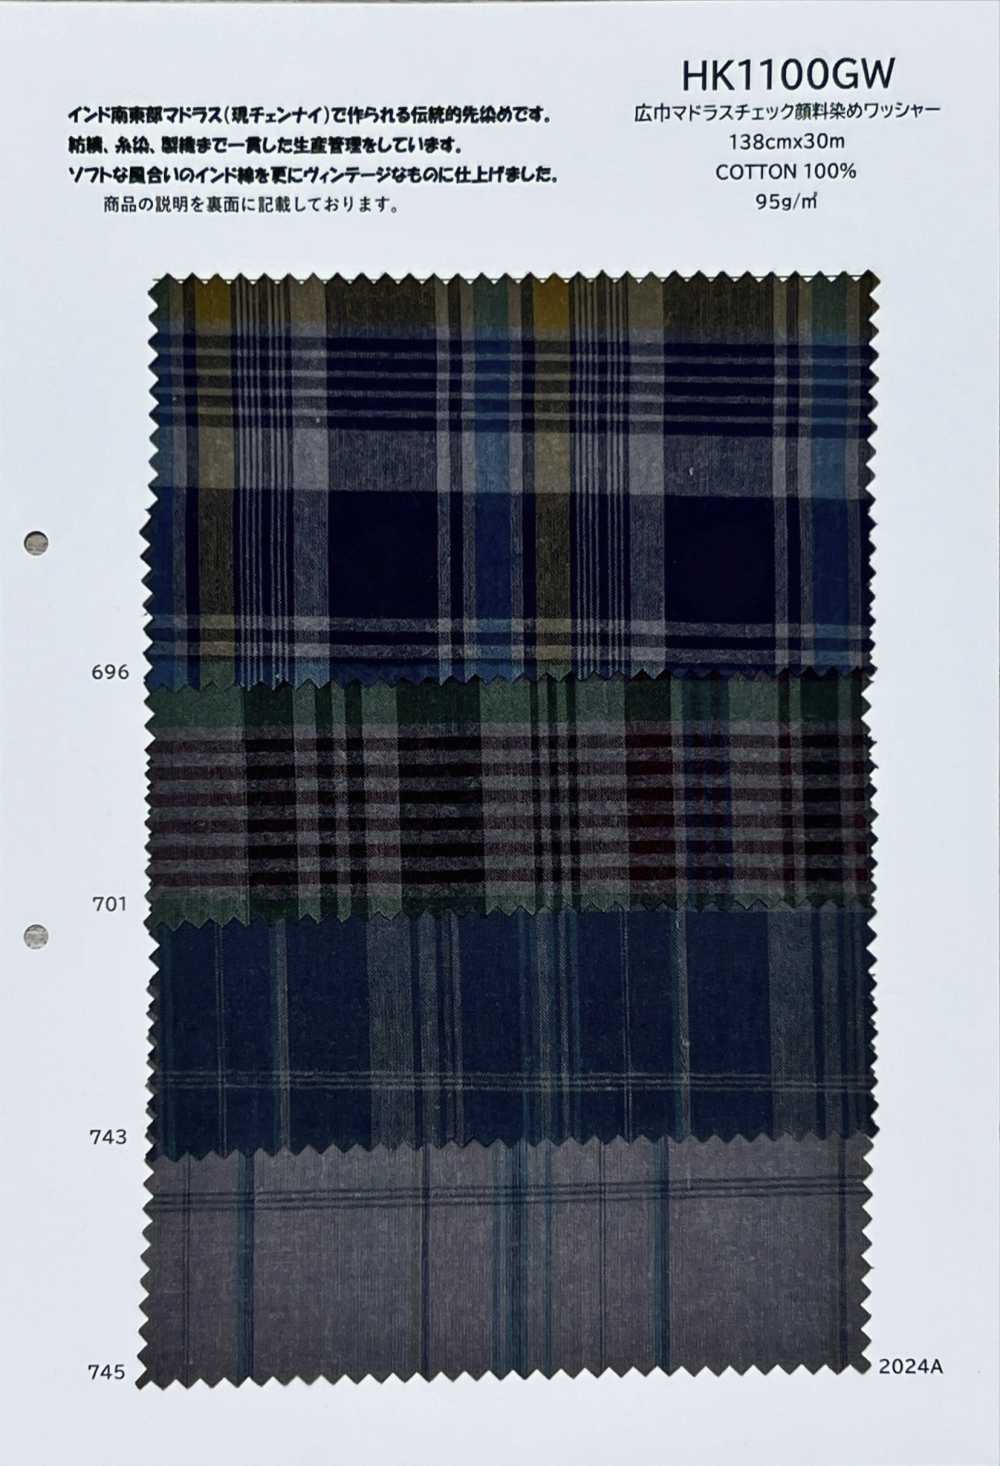 HK1100GW Traitement Des Rondelles Teintées Par Pigment Madras Check De Grande Largeur[Fabrication De Textile] KOYAMA